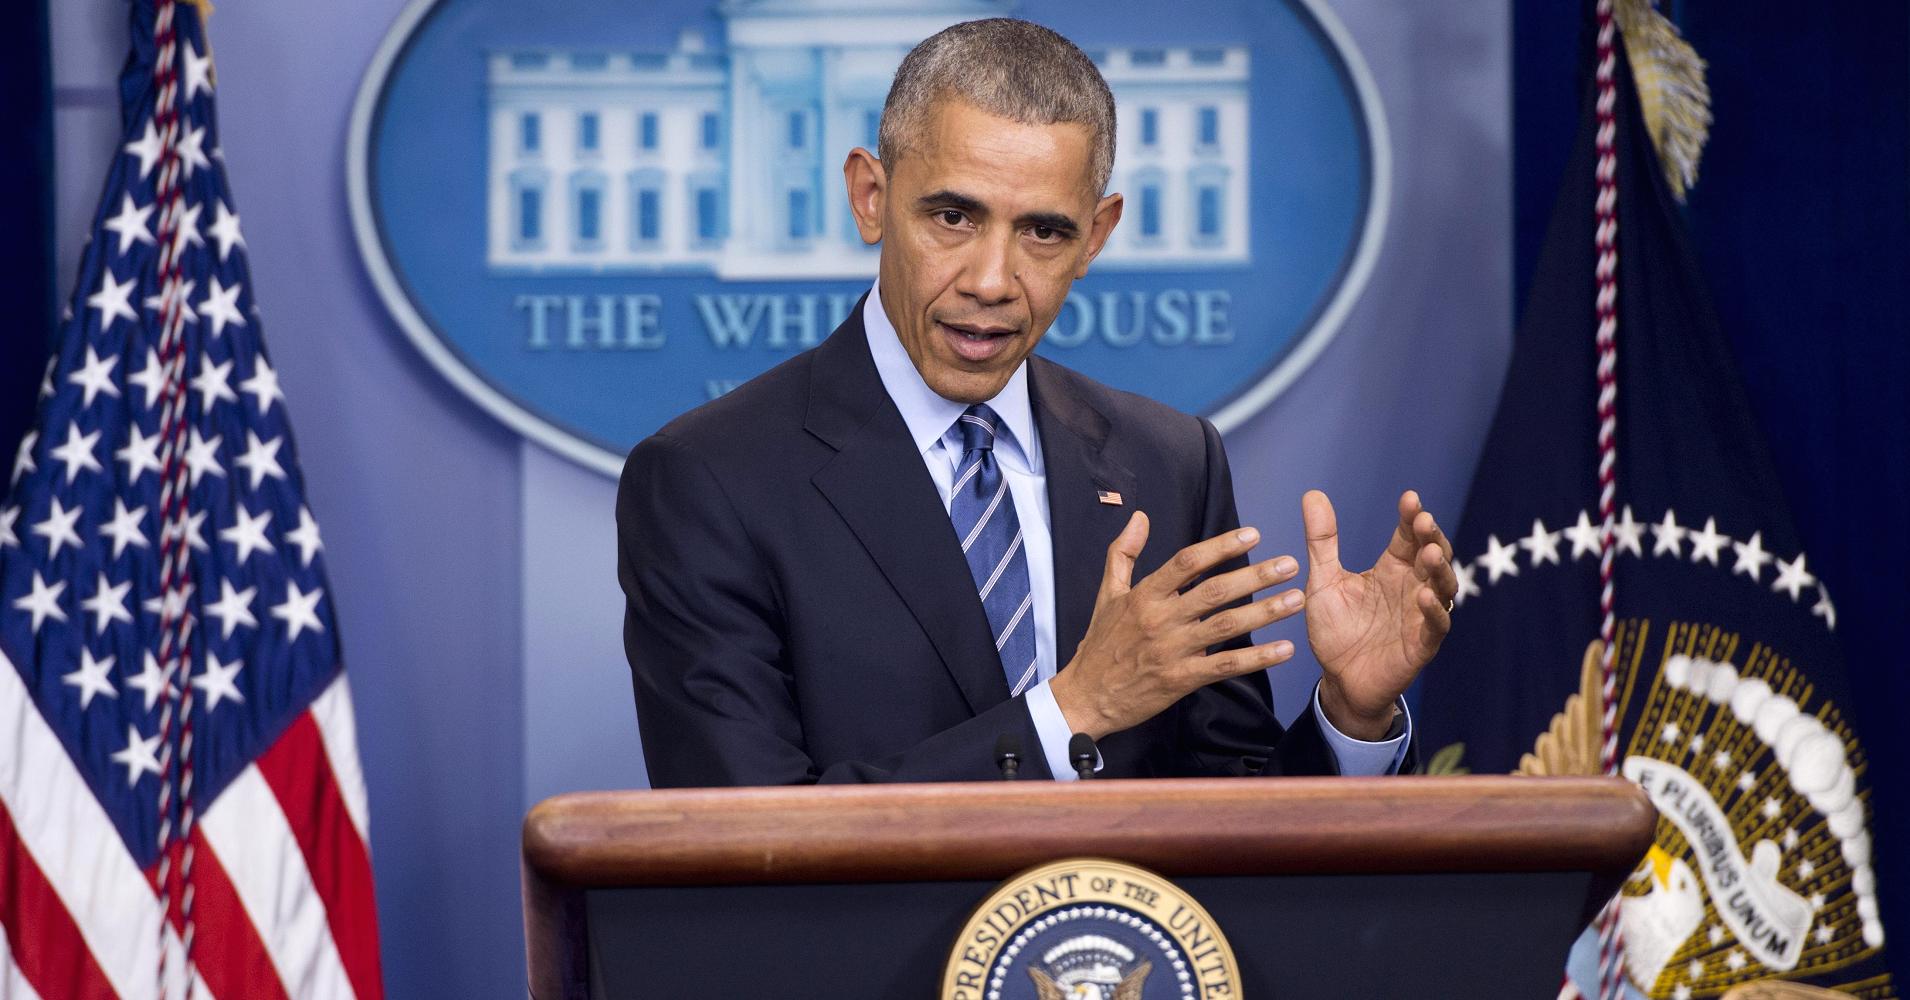 Obama points finger at Putin for hacks during U.S. election